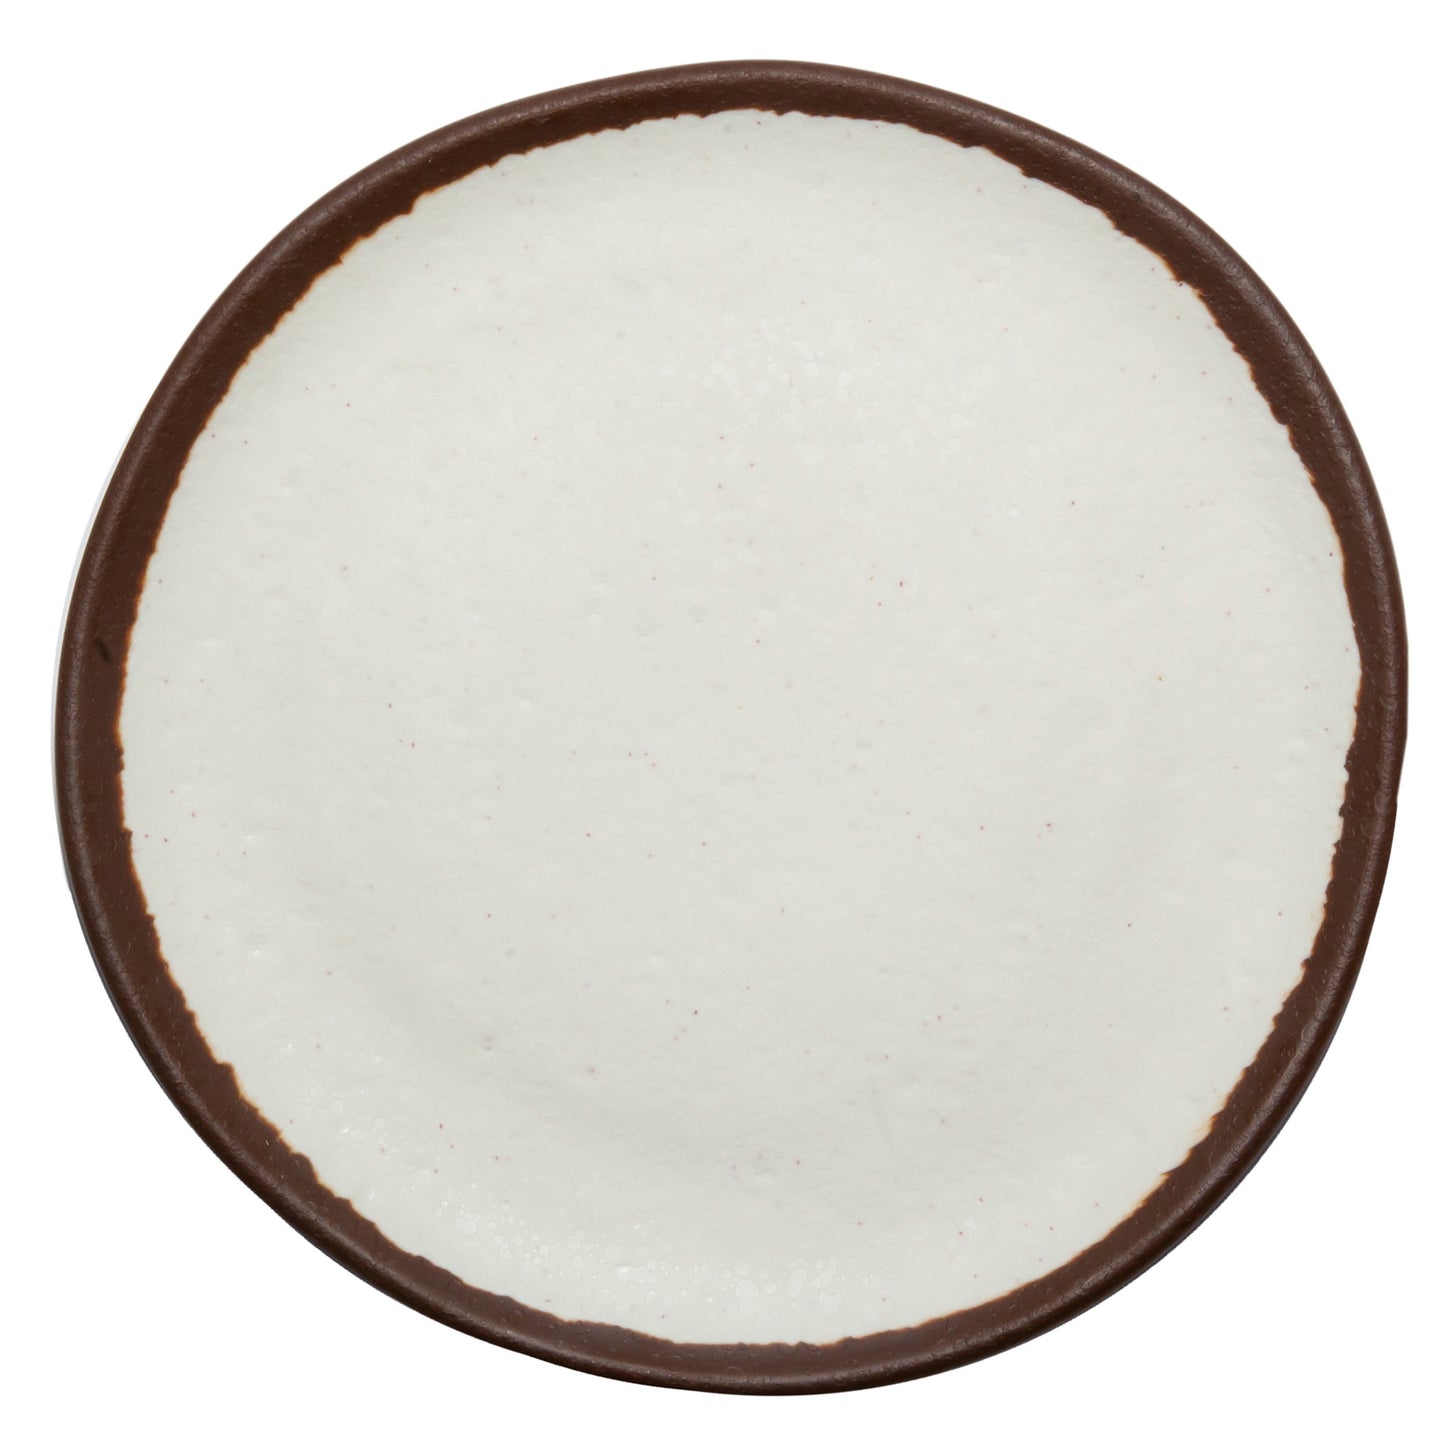 9" Cream, Melamine, Small Round Dinner Plate, G.E.T. Pottery Market Glazed (12 Pack)